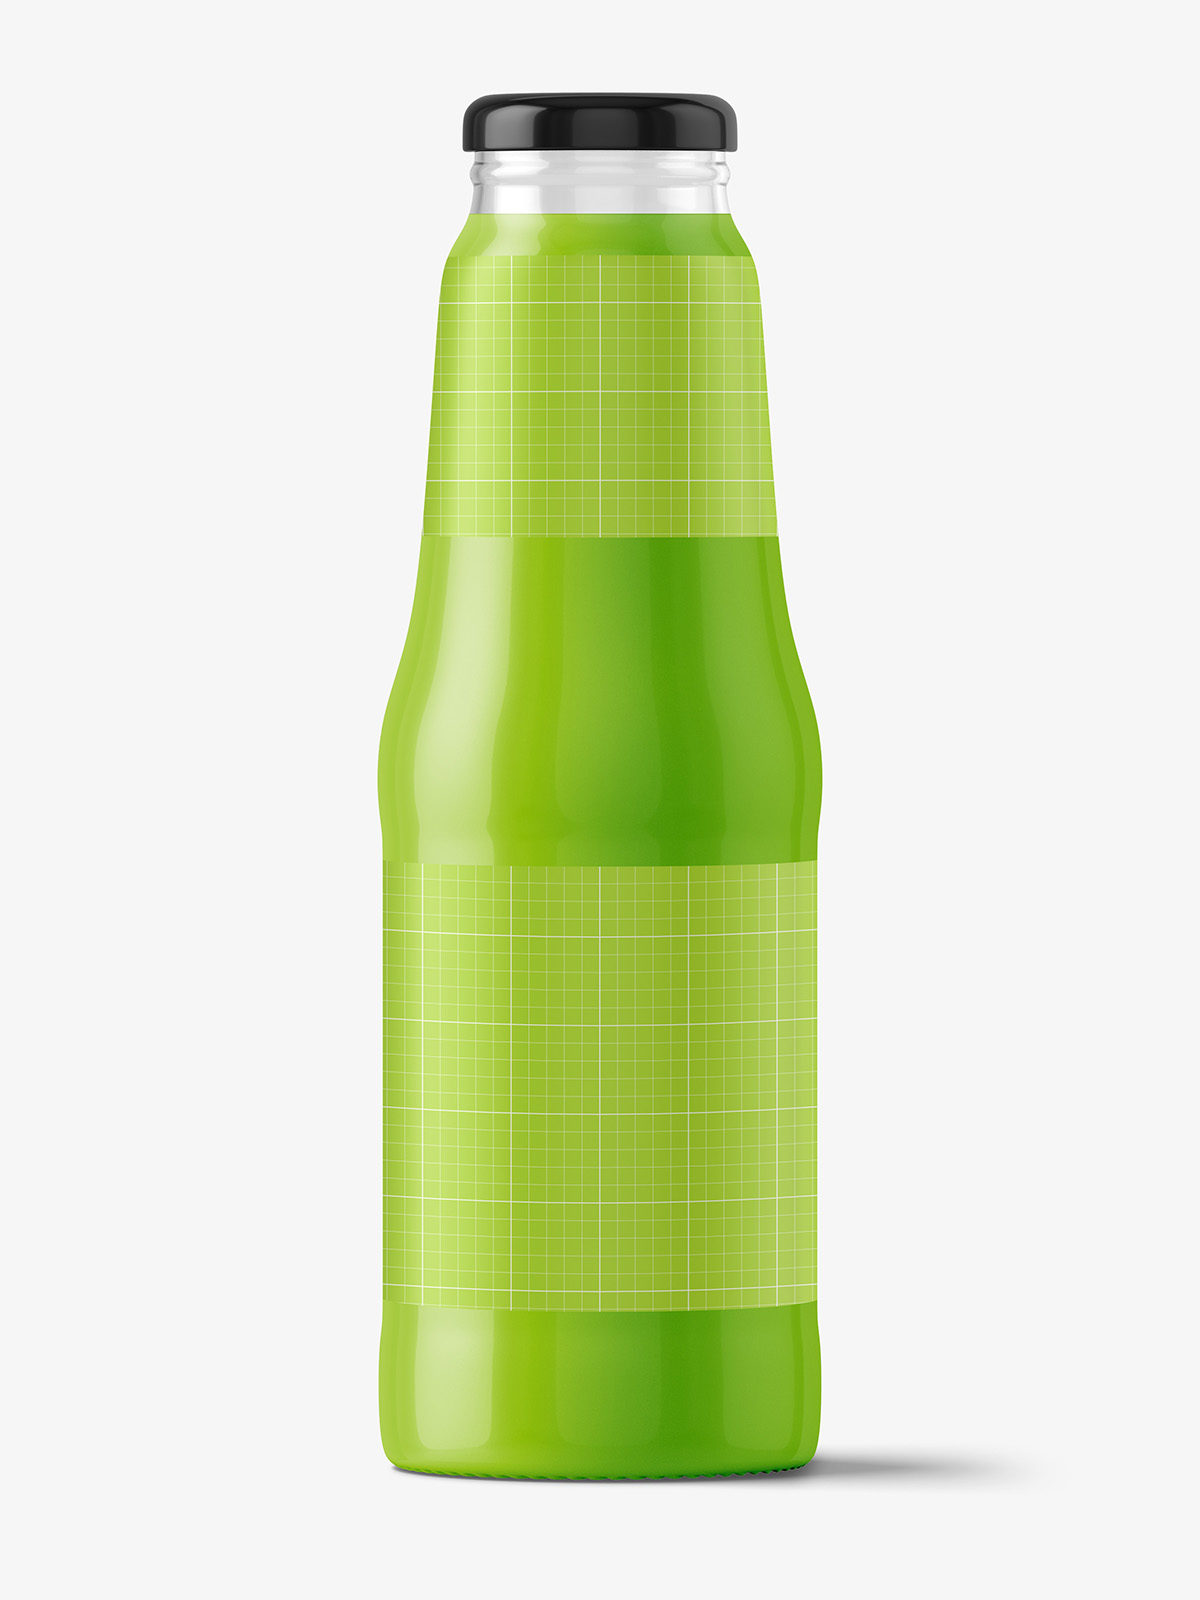 Download Glass juice bottle mockup - Smarty Mockups